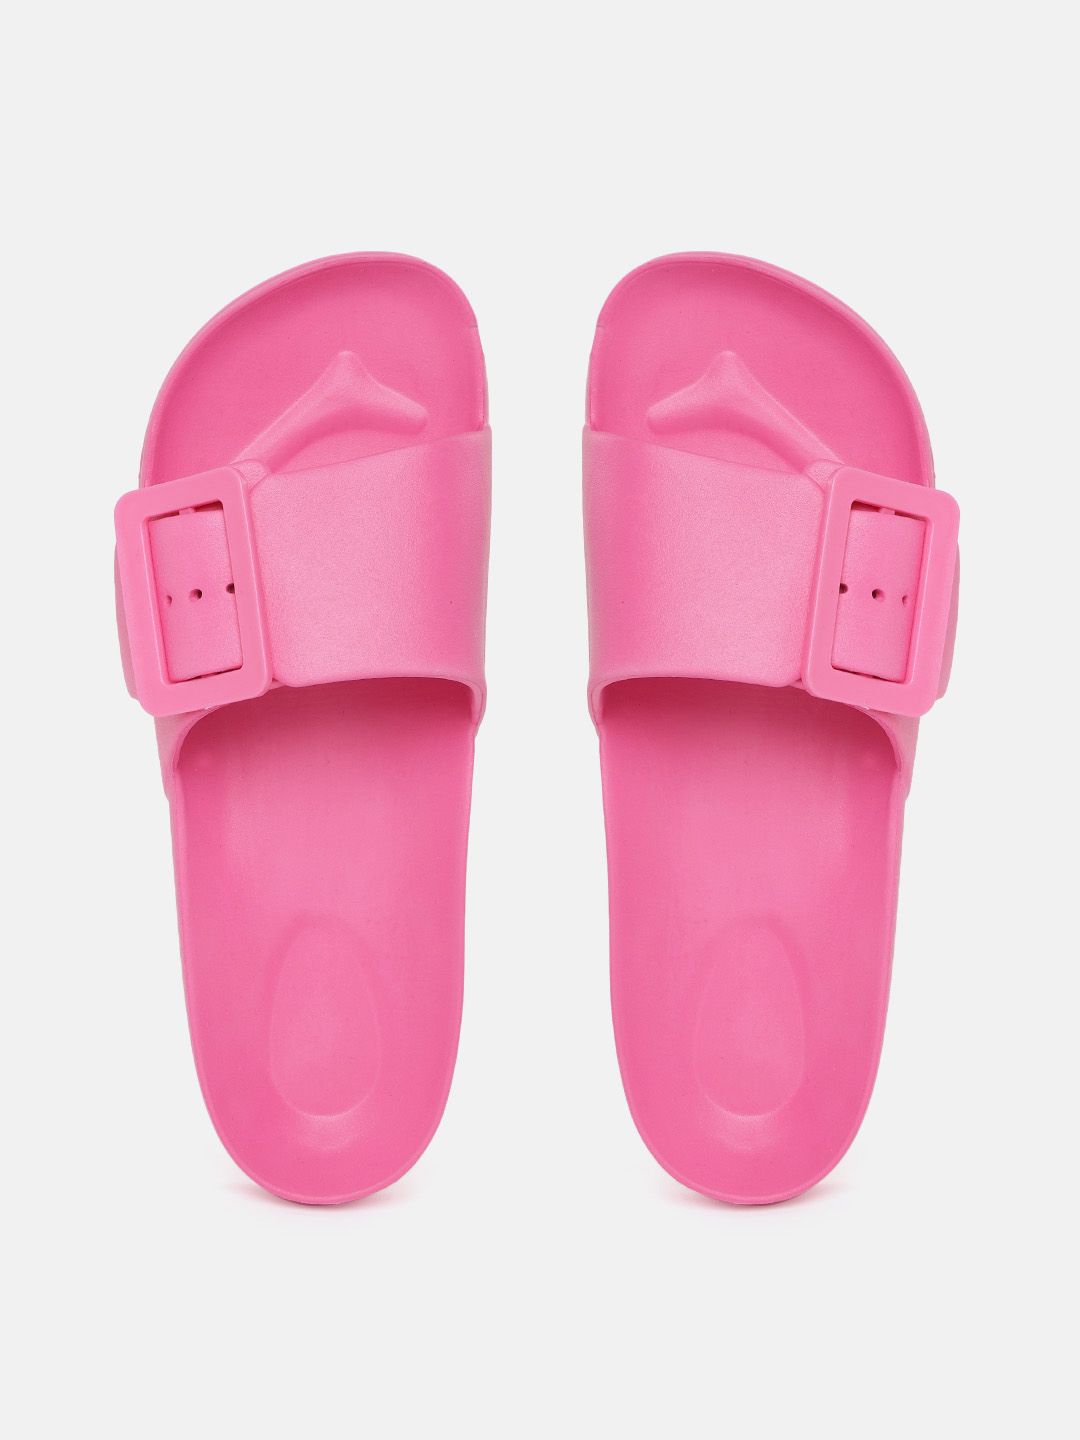 Kook N Keech Women Pink Solid Rubber Sliders Price in India